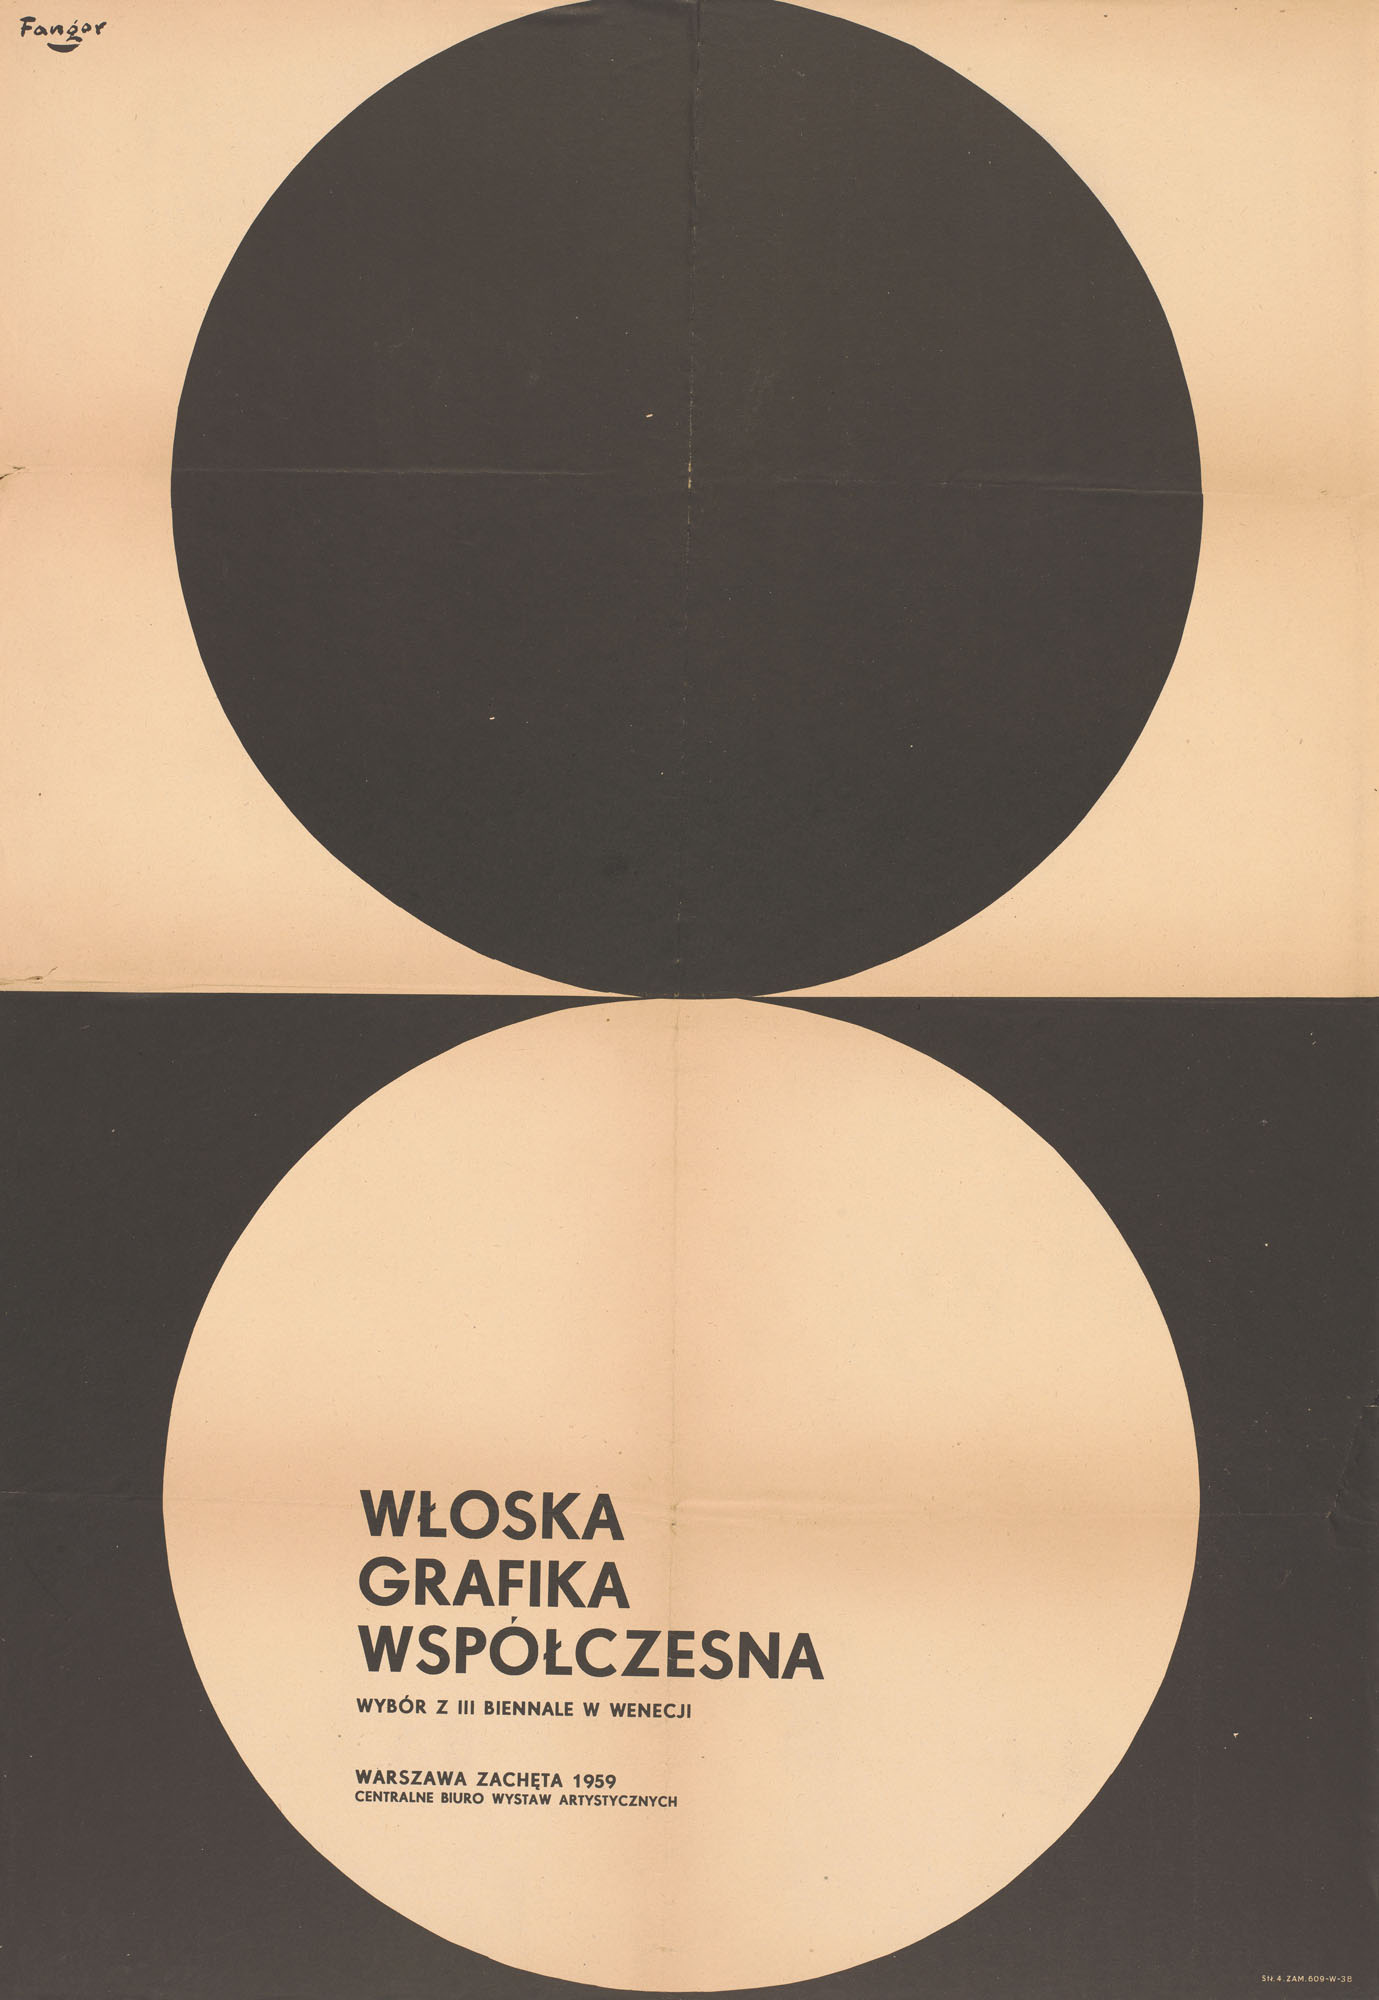 Wojciech Fangor: Włoska grafika współczesna. Wybór z III Biennale w Wenecji, 1959